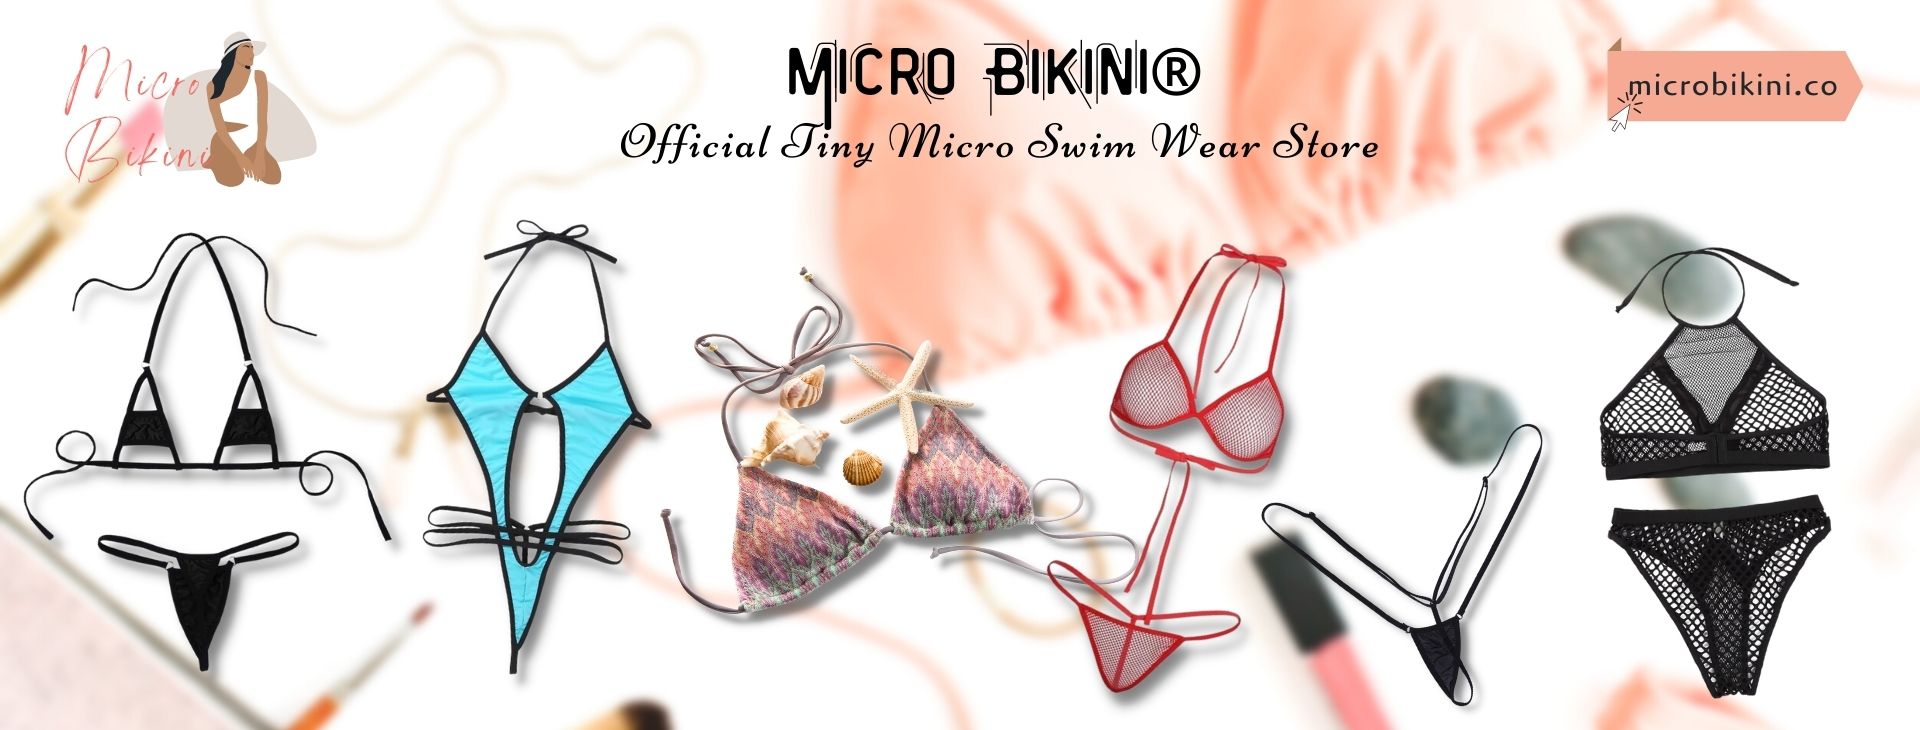 Micro Bikini Web Banner - Micro Bikini®